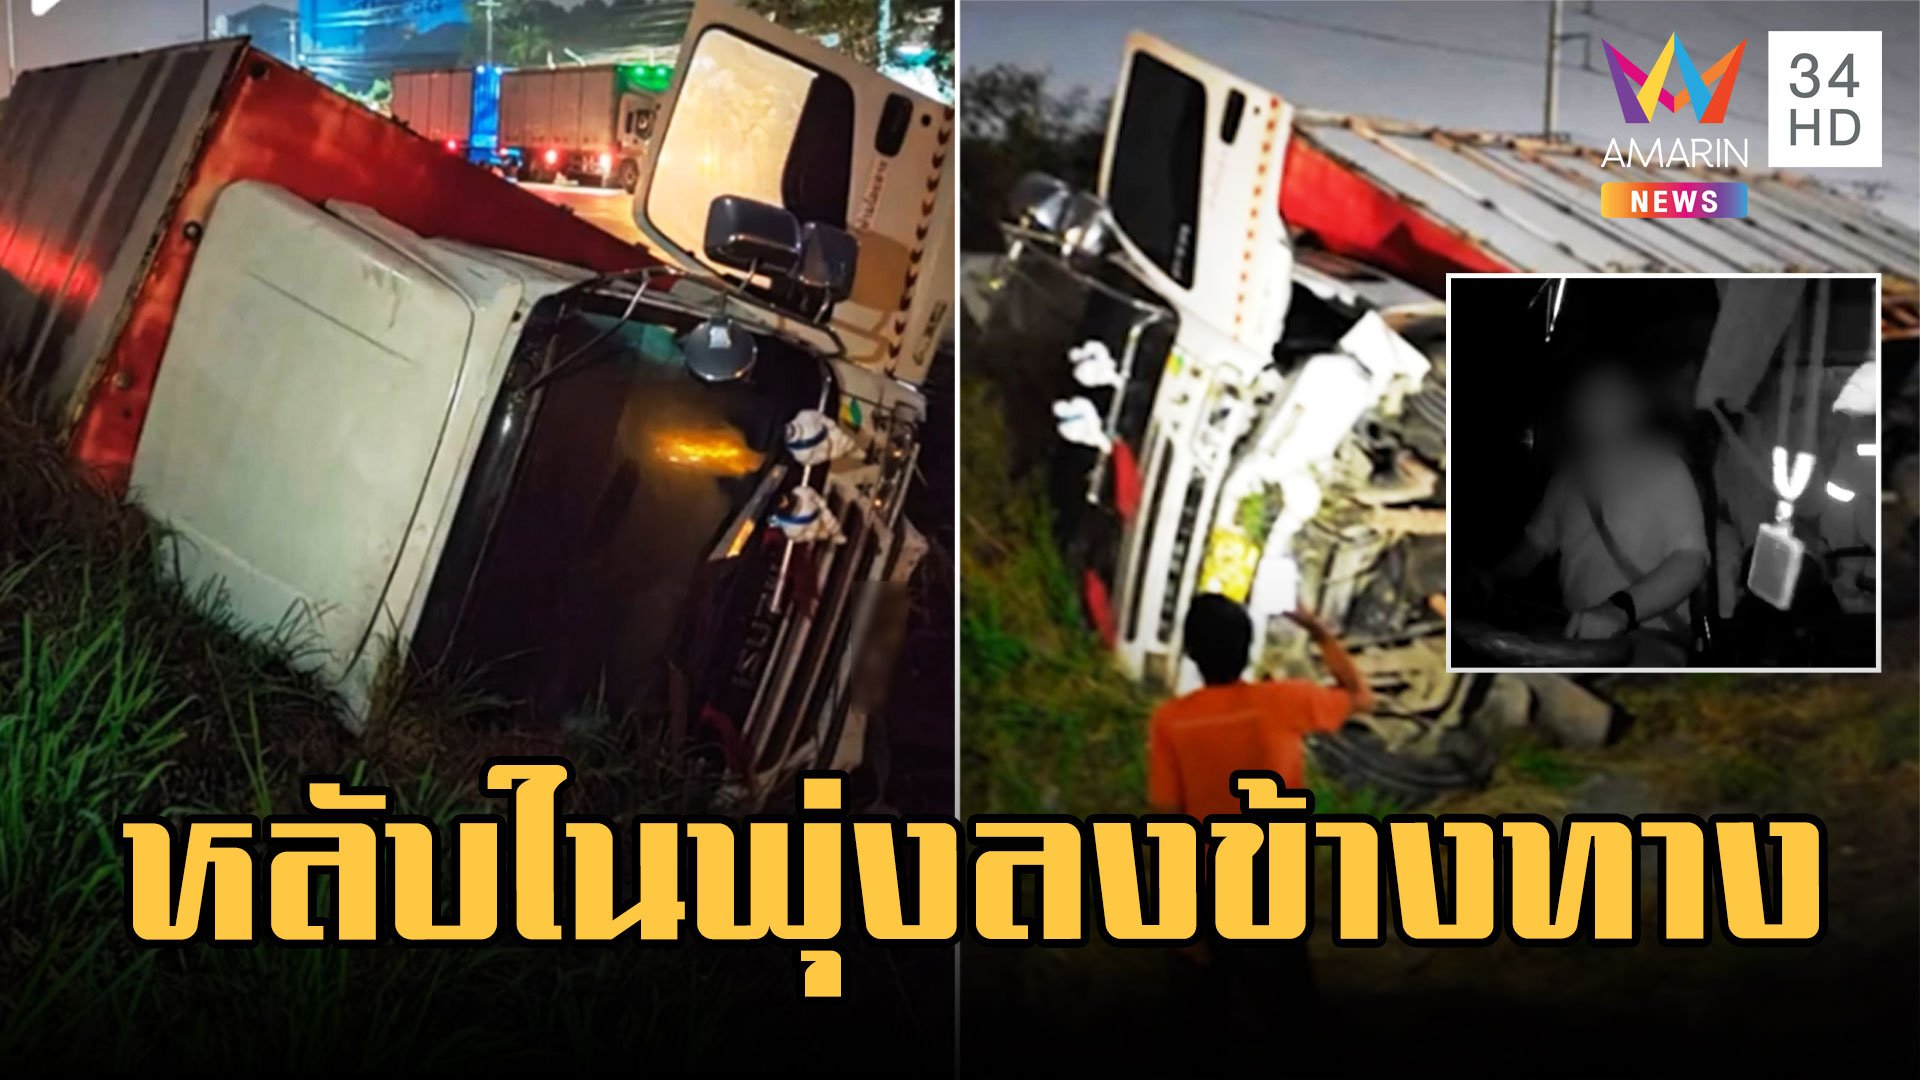 อุทาหรณ์ง่วงไม่ขับ รถบรรทุกหลับในพุ่งลงข้างทาง โชคดีไร้เจ็บ | ข่าวเที่ยงอมรินทร์ | 11 ก.พ. 66 | AMARIN TVHD34